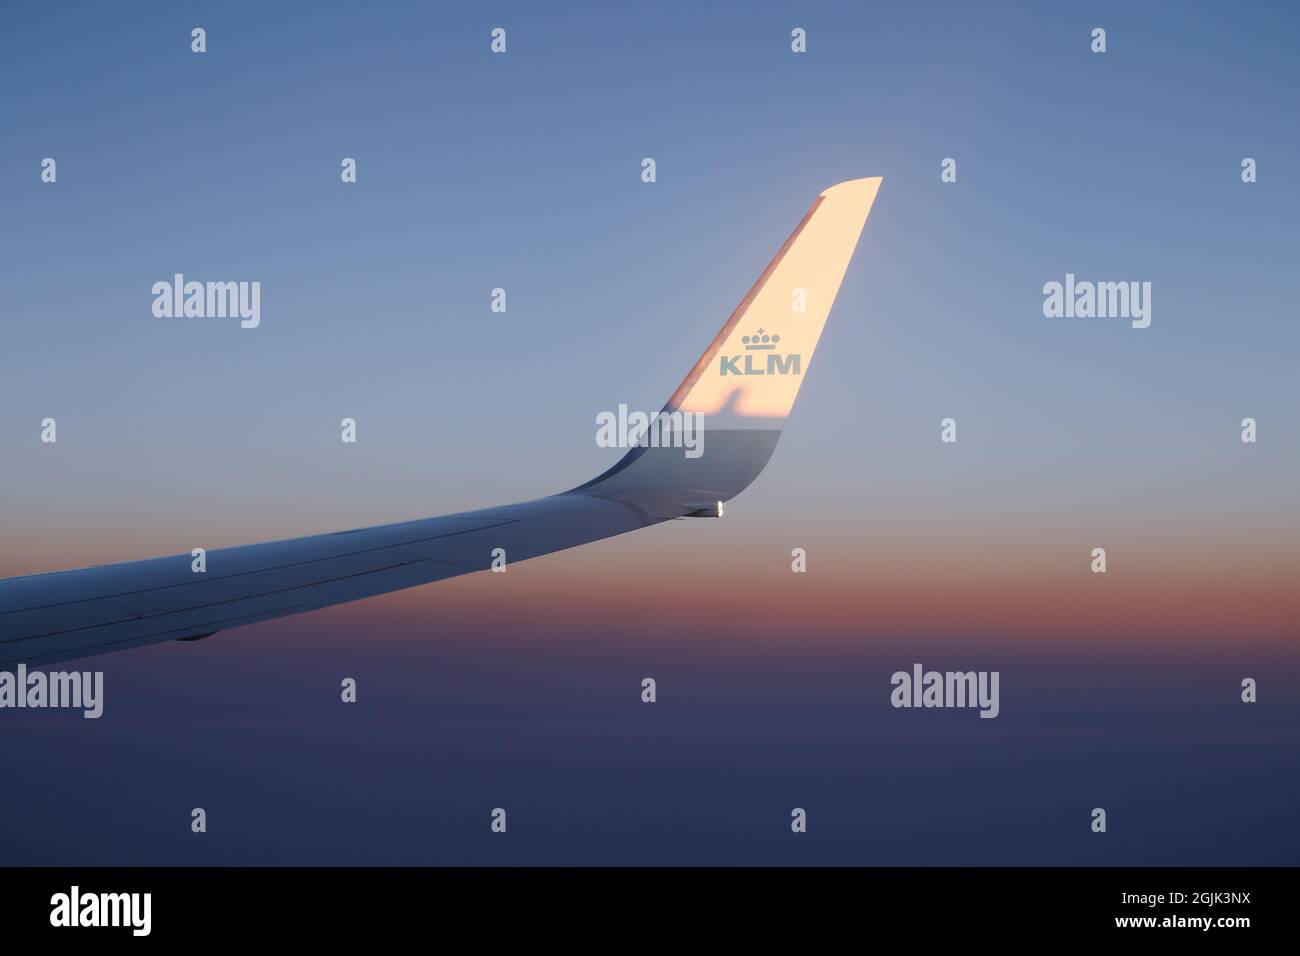 Helsinki, Finlandia - 17 luglio 2021: KLM ala piana contro il bellissimo tramonto. Volo da Amsterdam a Helsinki. Foto Stock